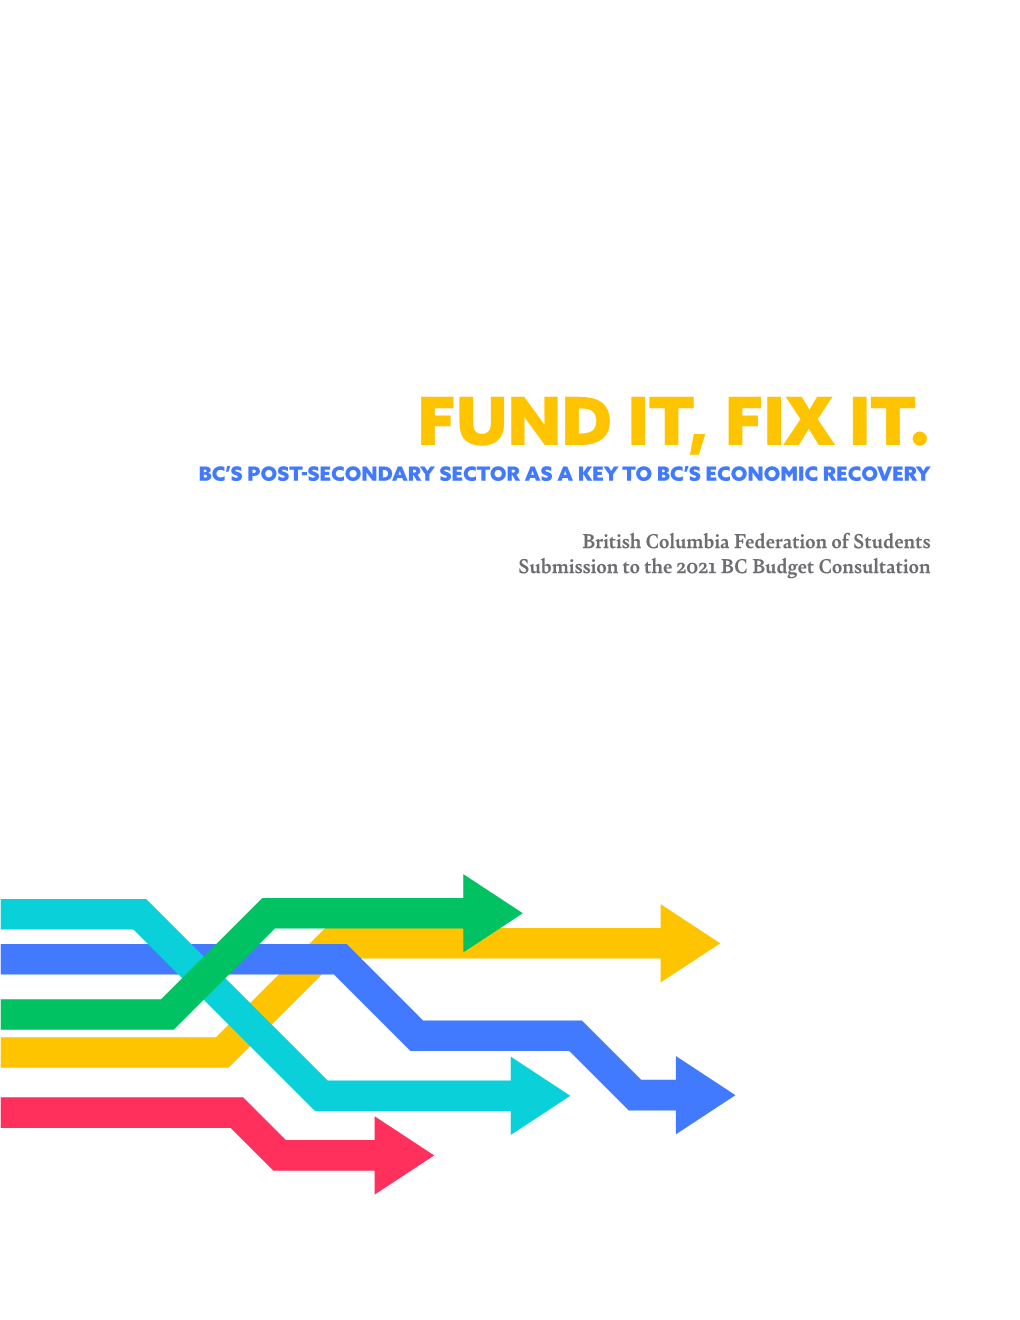 Fund It, Fix It